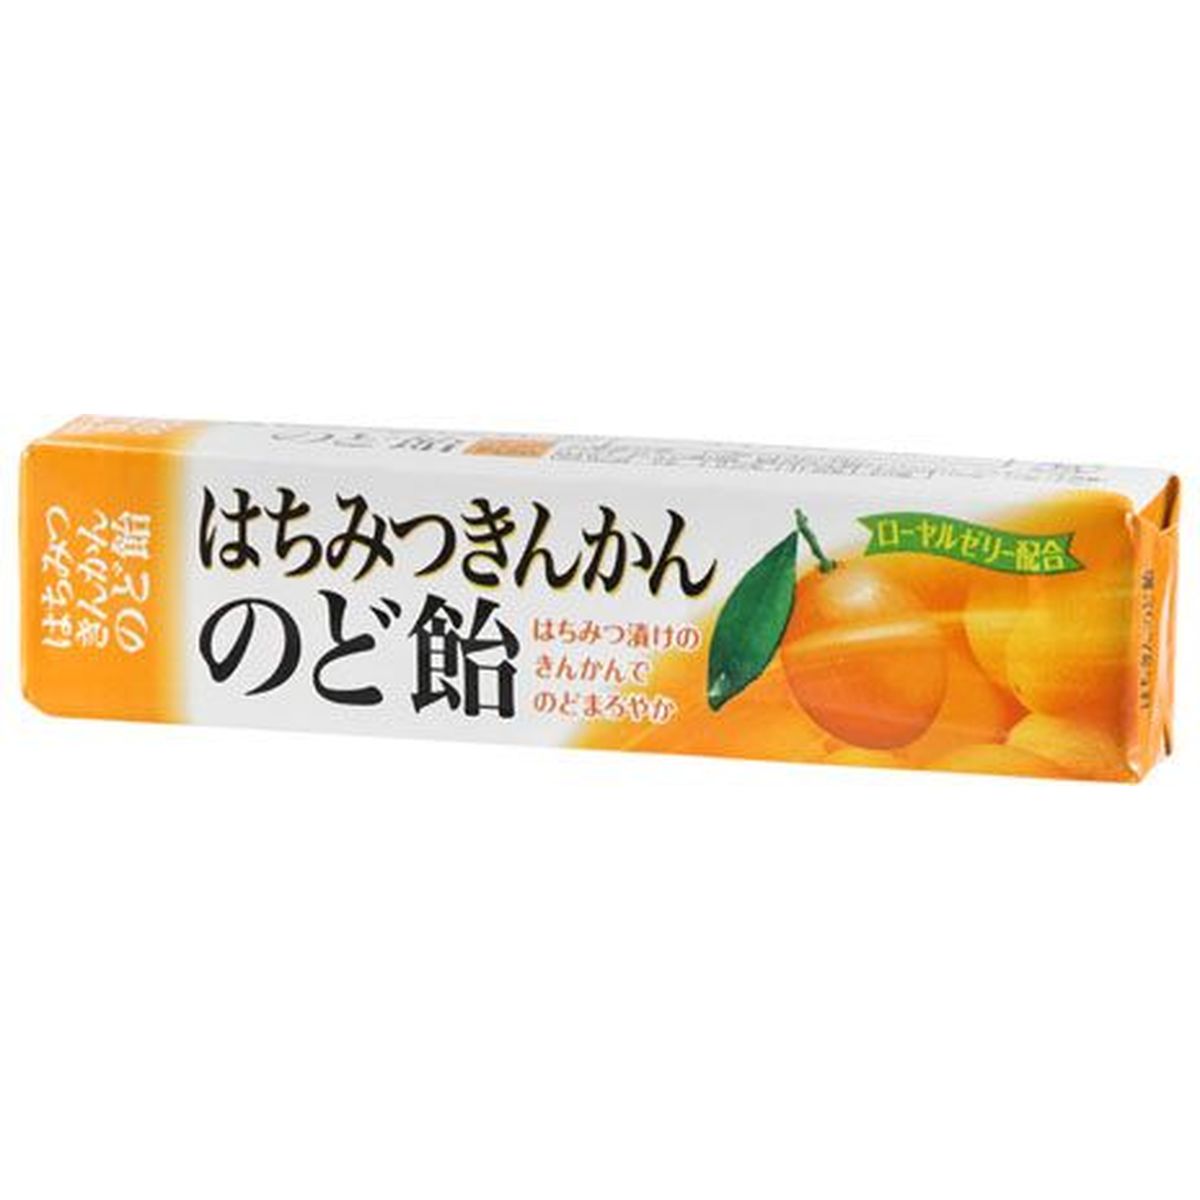 【10個入リ】ノーベル ハチミツキンカンノド飴スティック 10粒